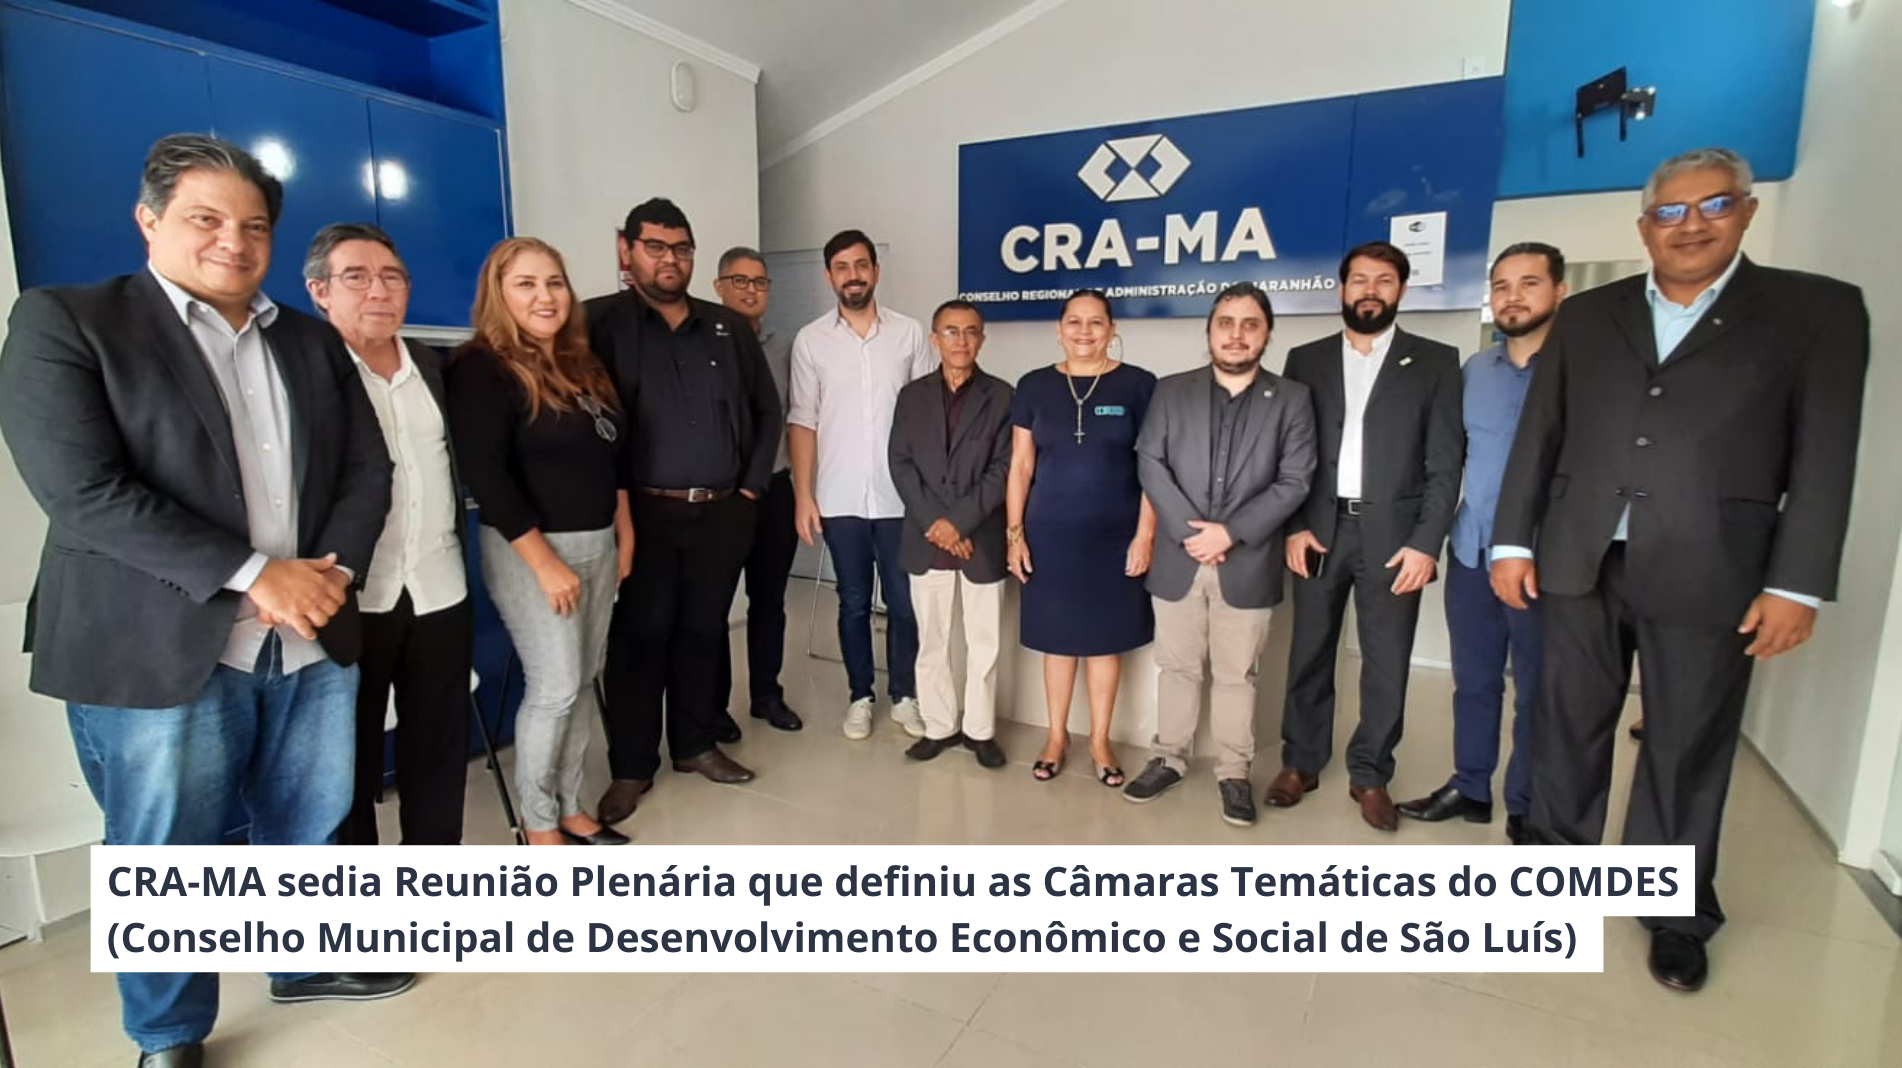 Recebemos em nossa sede, nesta terça-feira (05), a Reunião Plenária que definiu as Câmaras Temáticas do Conselho Municipal de Desenvolvimento Econômico e Social de São Luís (COMDES).